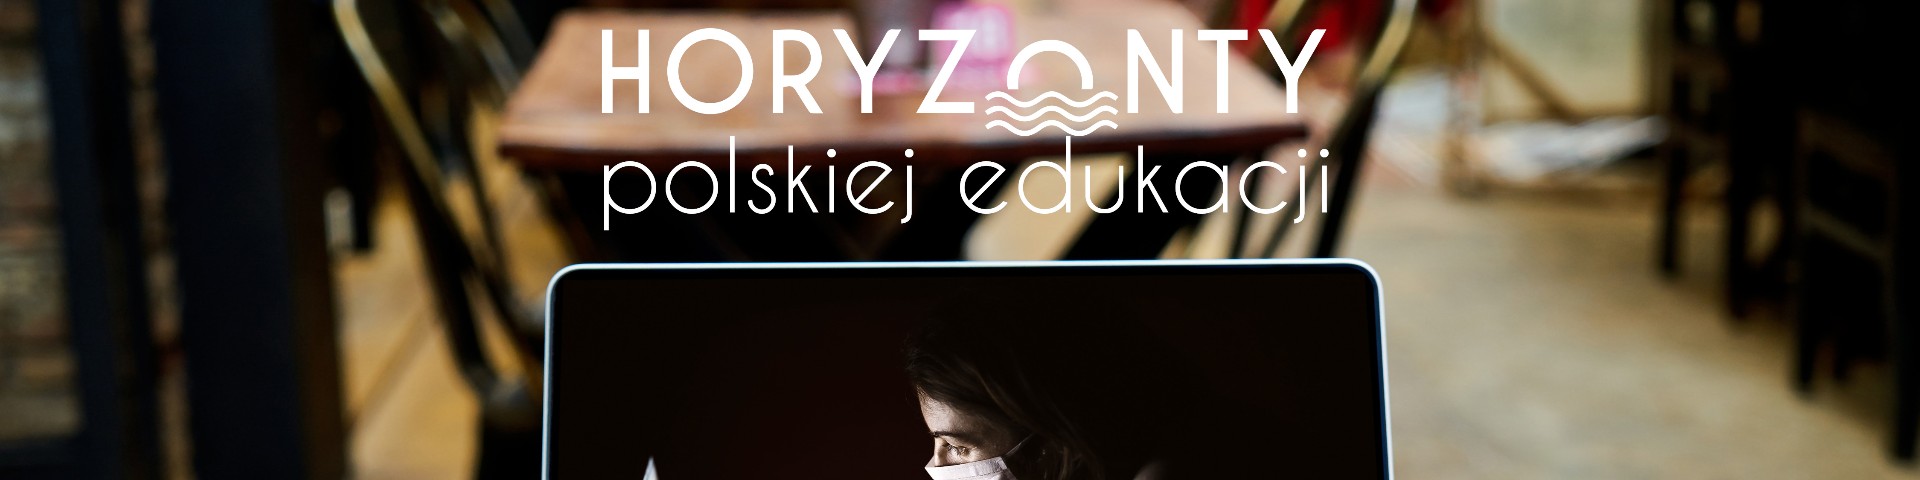 Horyzonty polskiej edukacji – strategie przetrwania